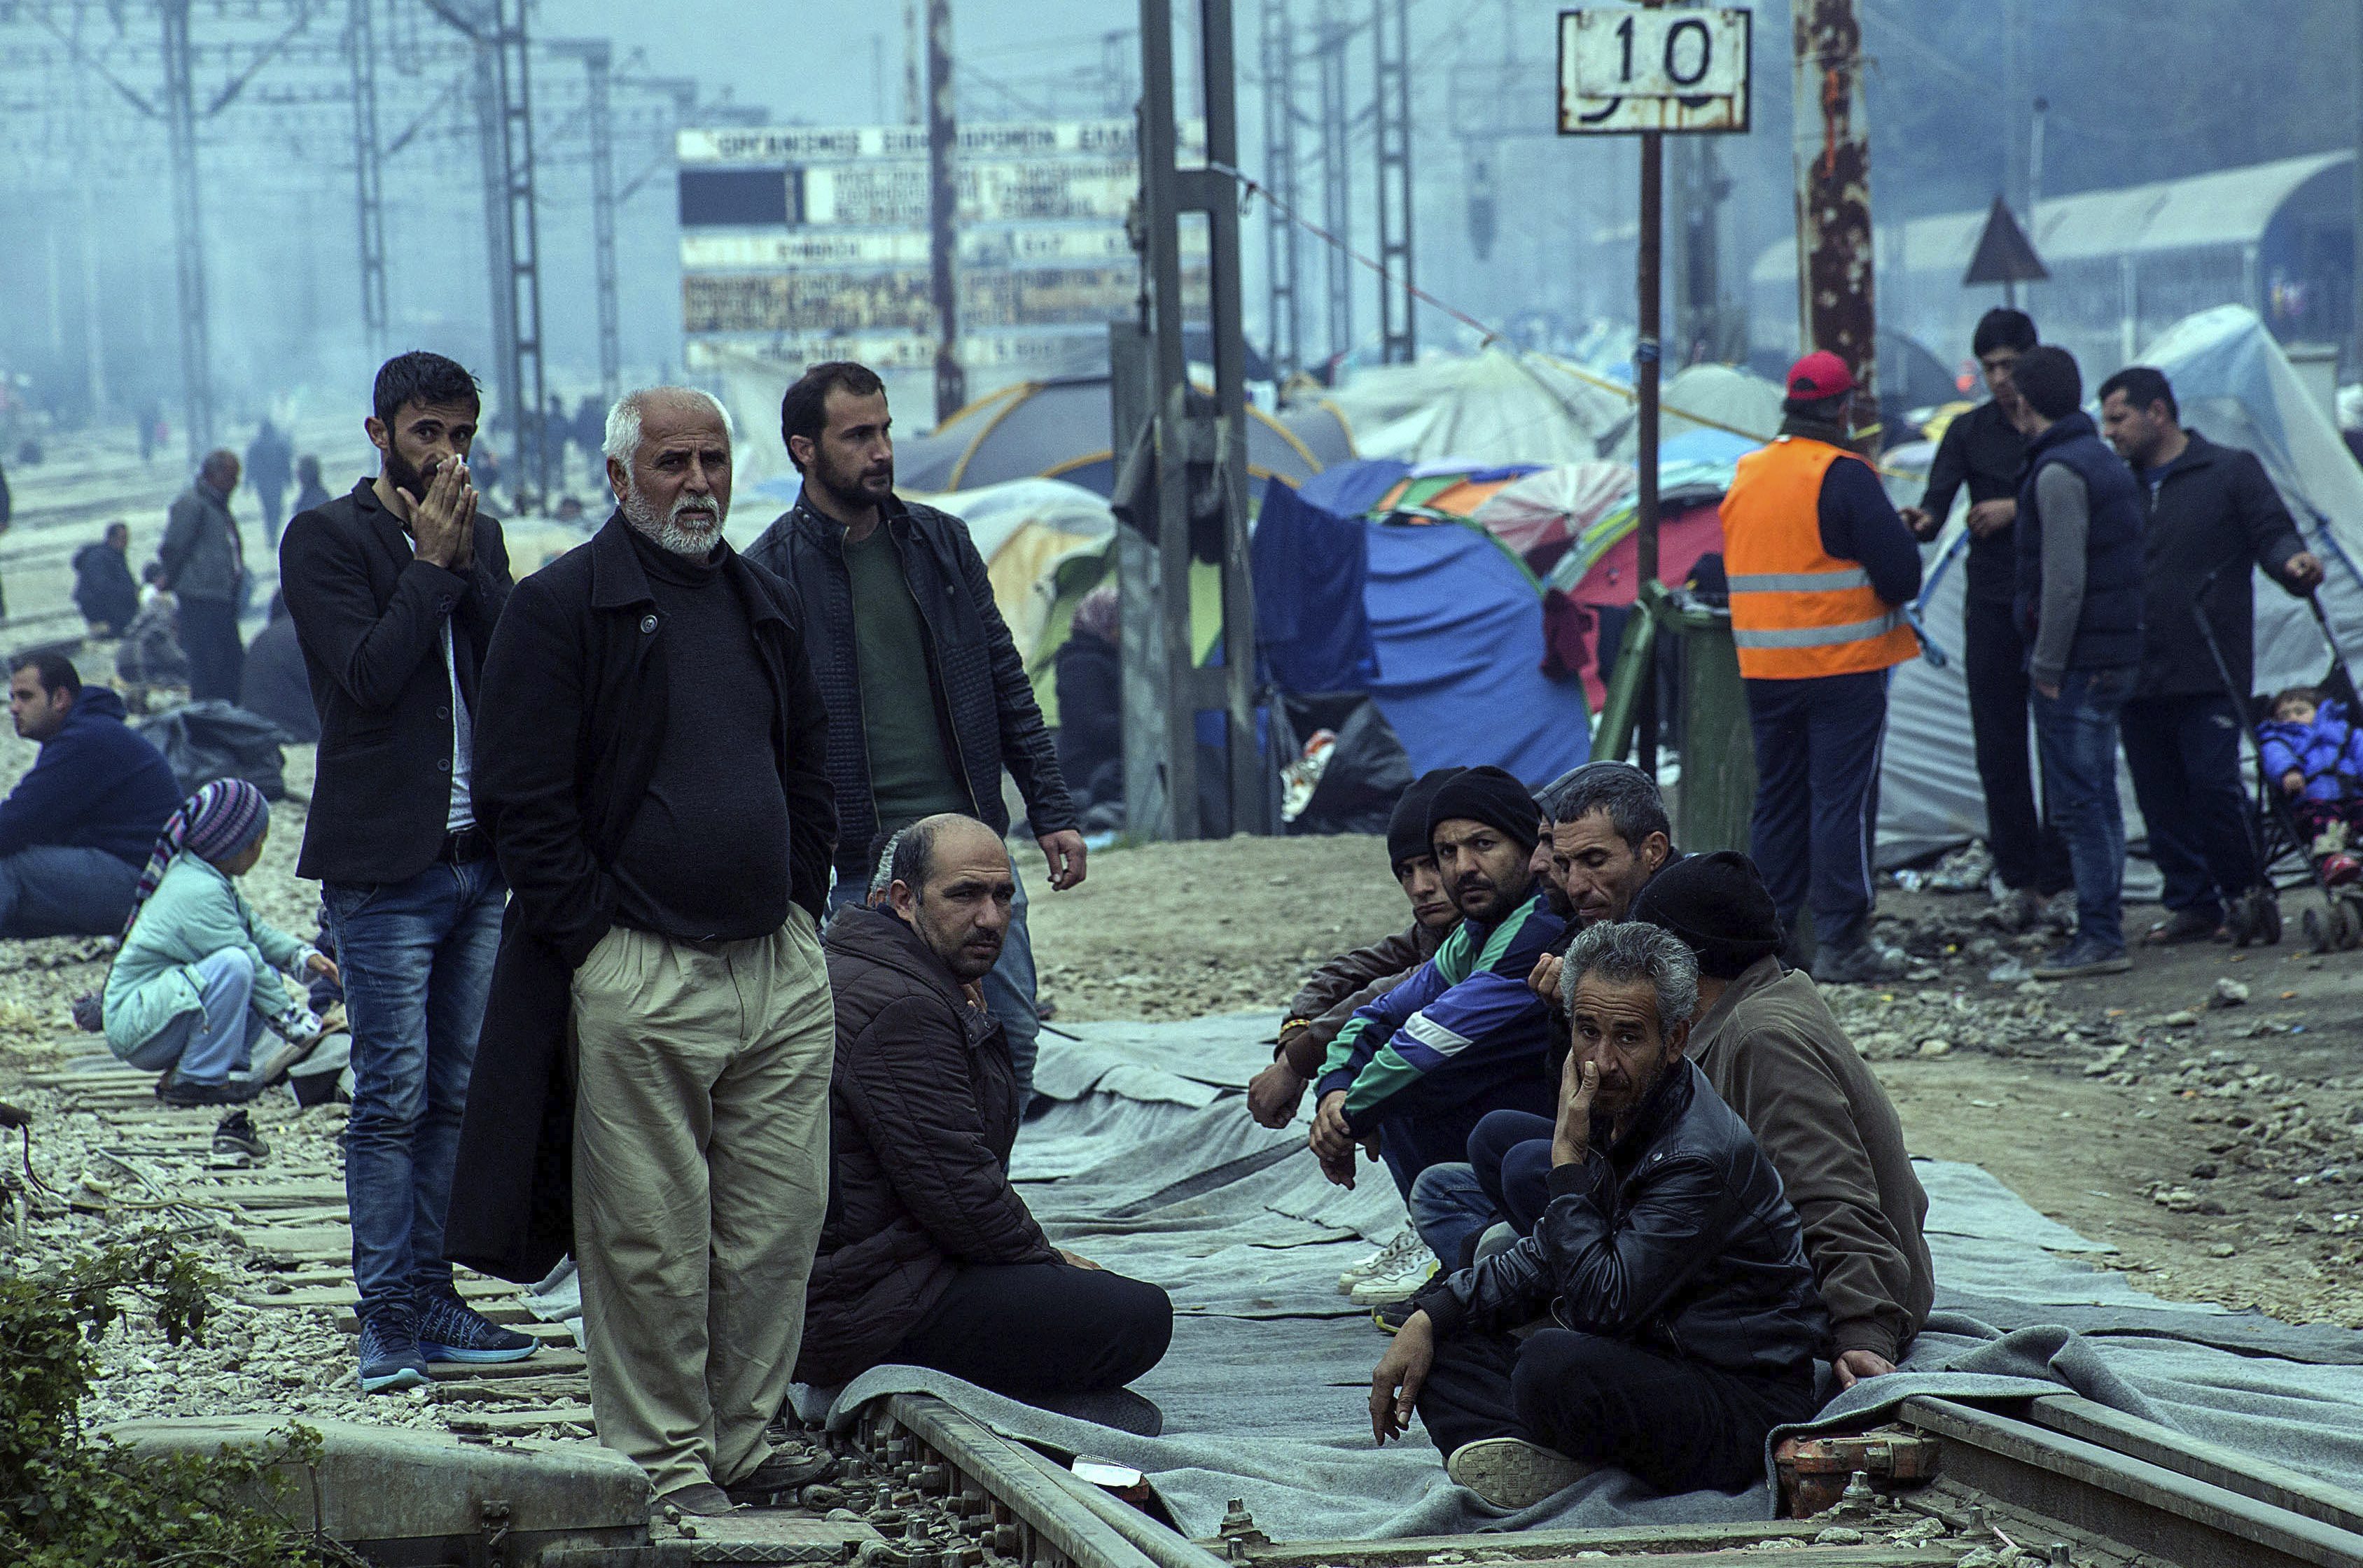 Europa se ha aprovechado de la desesperación de los refugiados para explotarlos como mano de obra barata.